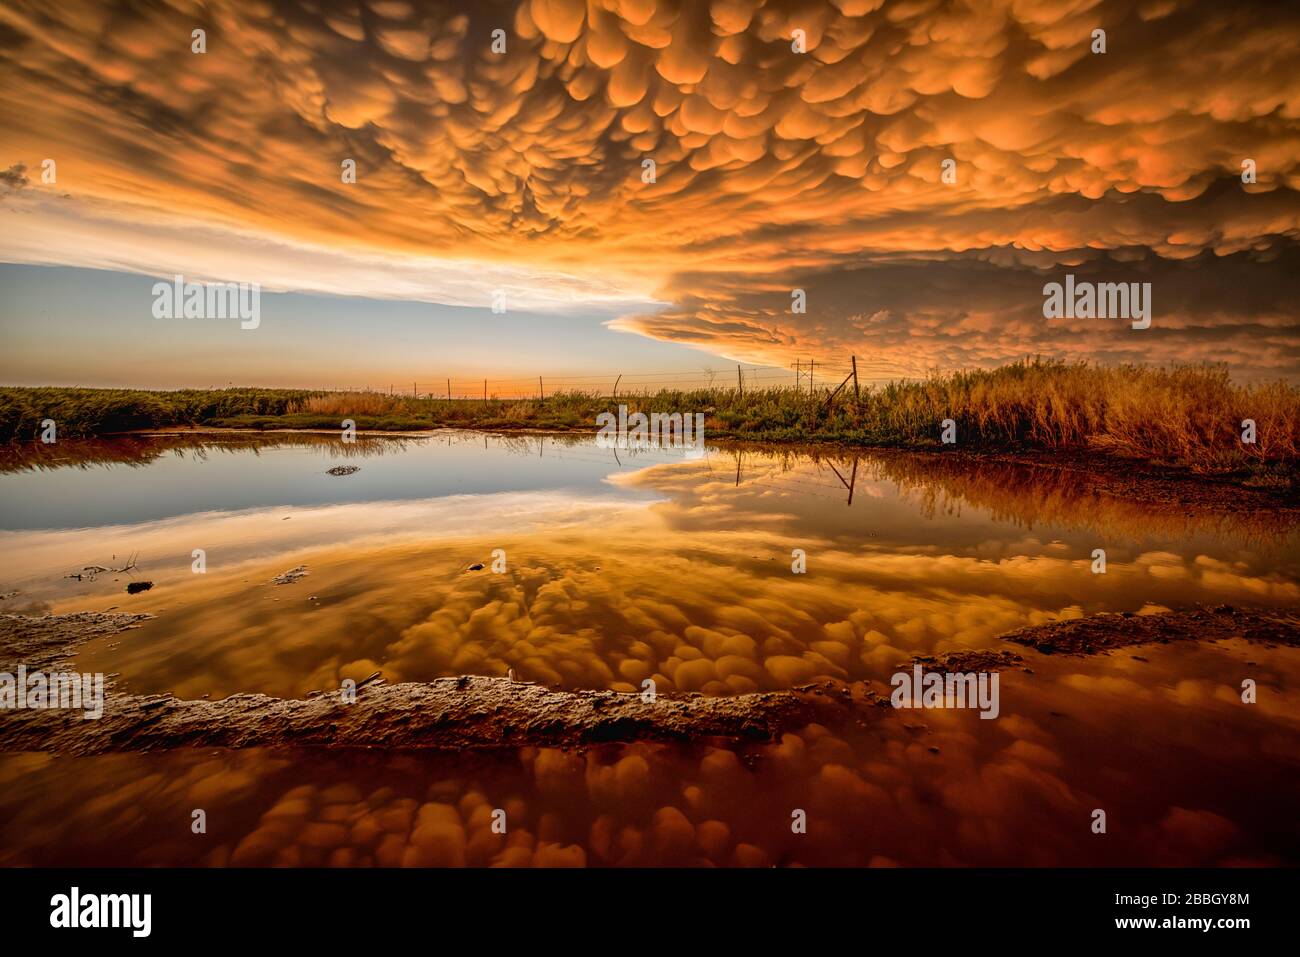 Sonnenuntergang über einem Teich mit einer perfekten Spiegelung von hellorangefarbenem Manmatus, wenn der Sturm in Dodge City Kansas Vereinigten Staaten passiert Stockfoto